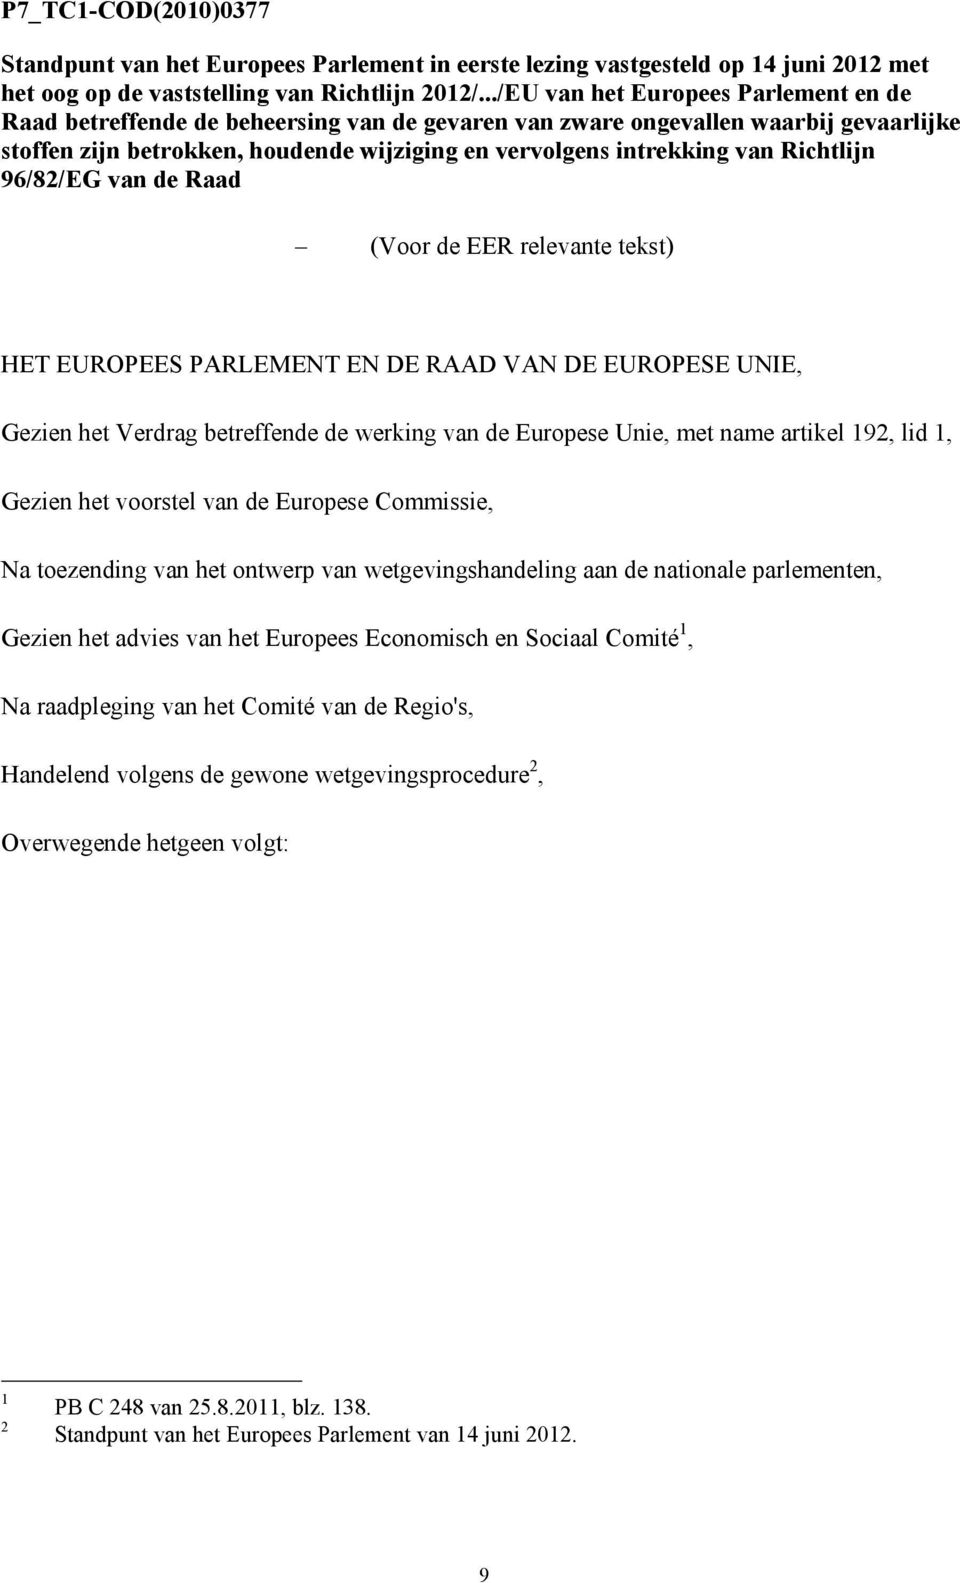 Richtlijn 96/82/EG van de Raad (Voor de EER relevante tekst) HET EUROPEES PARLEMENT EN DE RAAD VAN DE EUROPESE UNIE, Gezien het Verdrag betreffende de werking van de Europese Unie, met name artikel